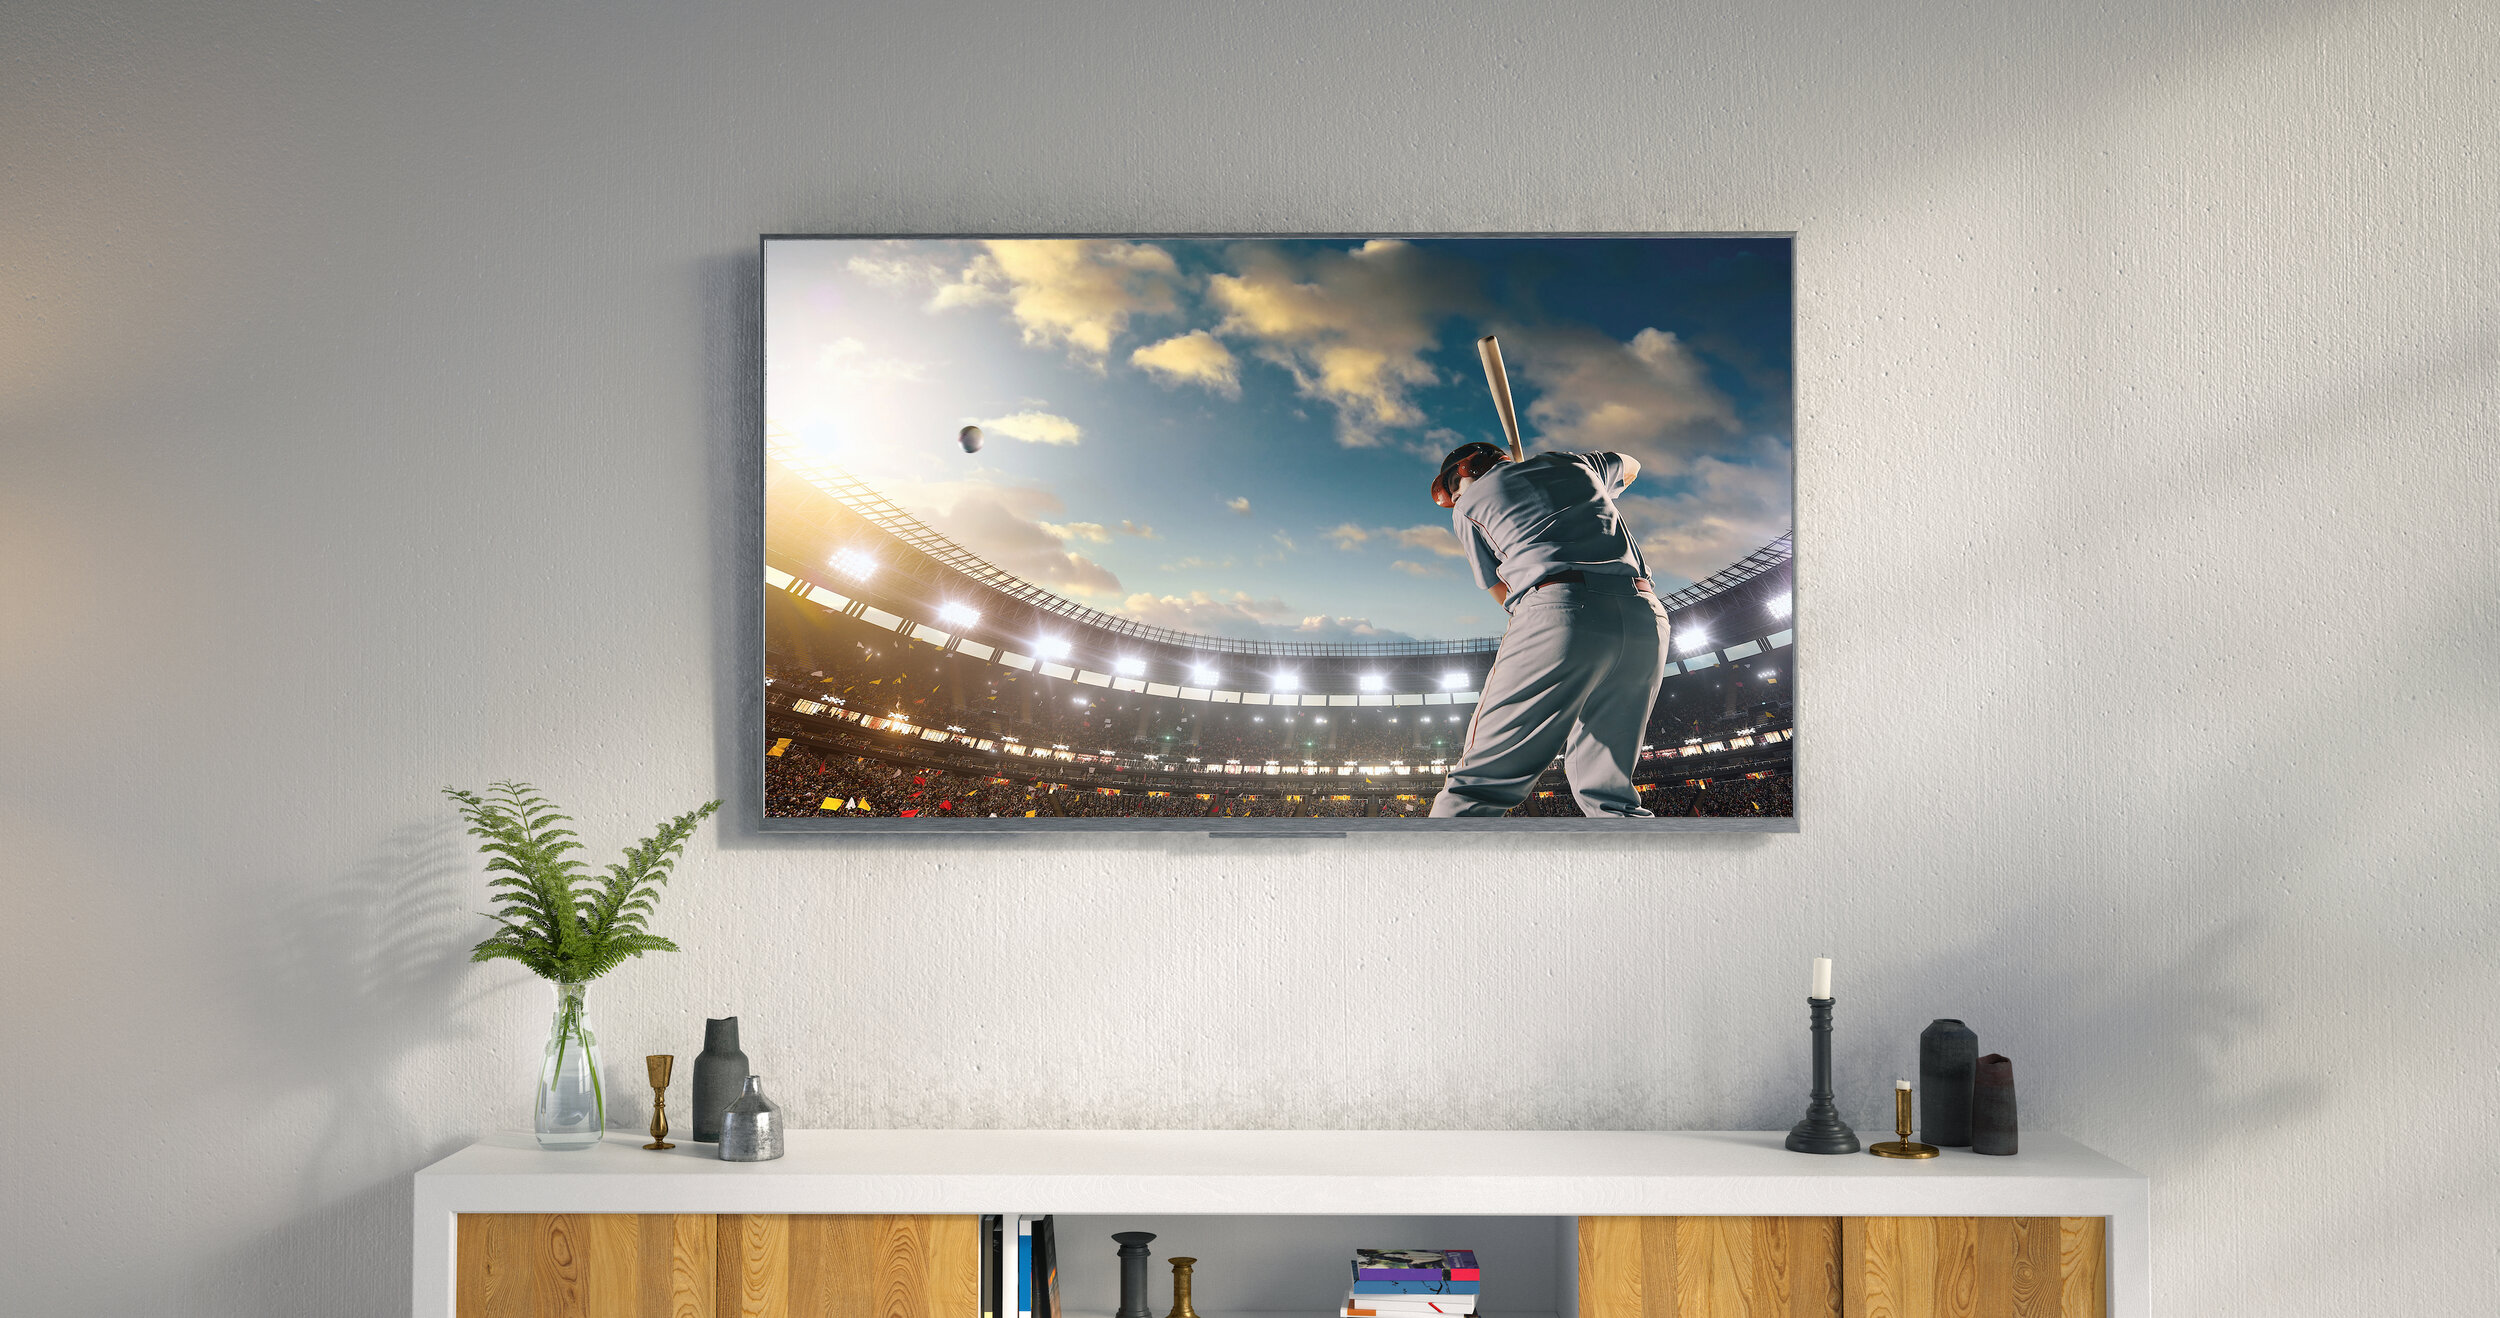 Sleek TV showing baseball game